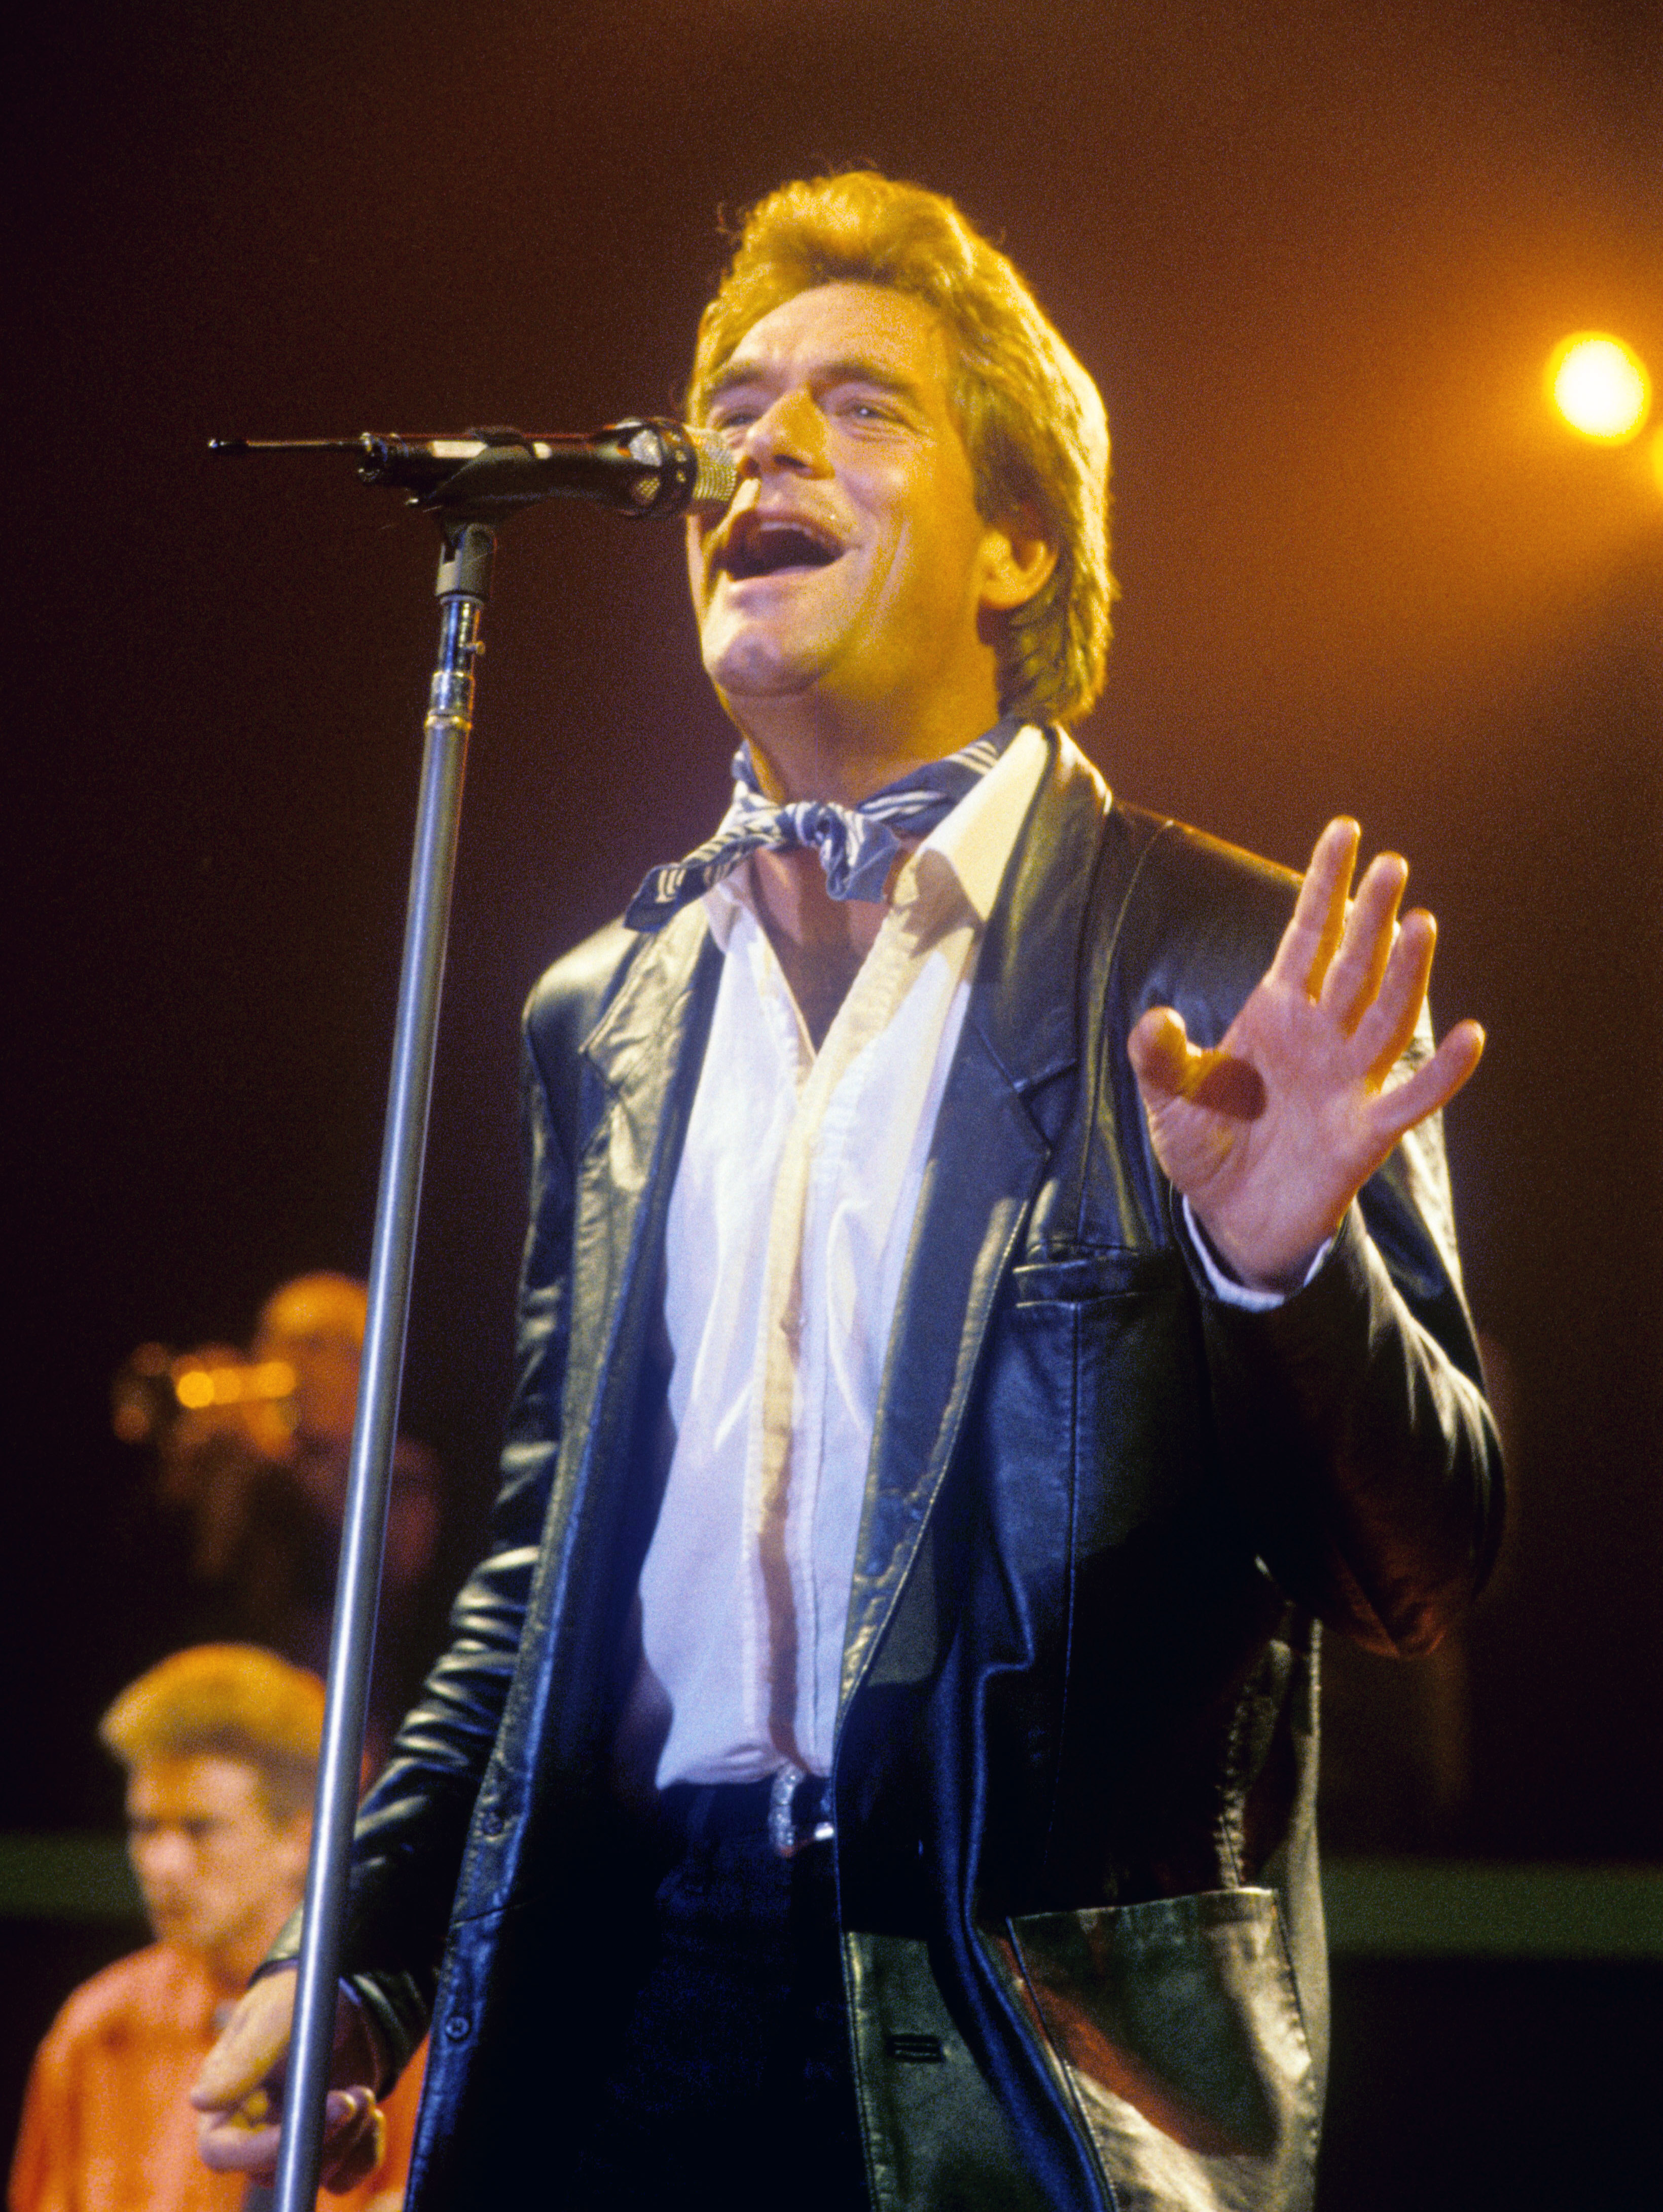 La estrella musical actuando en Munich, Alemania, el 18 de octubre de 1988. | Fuente: Getty Images